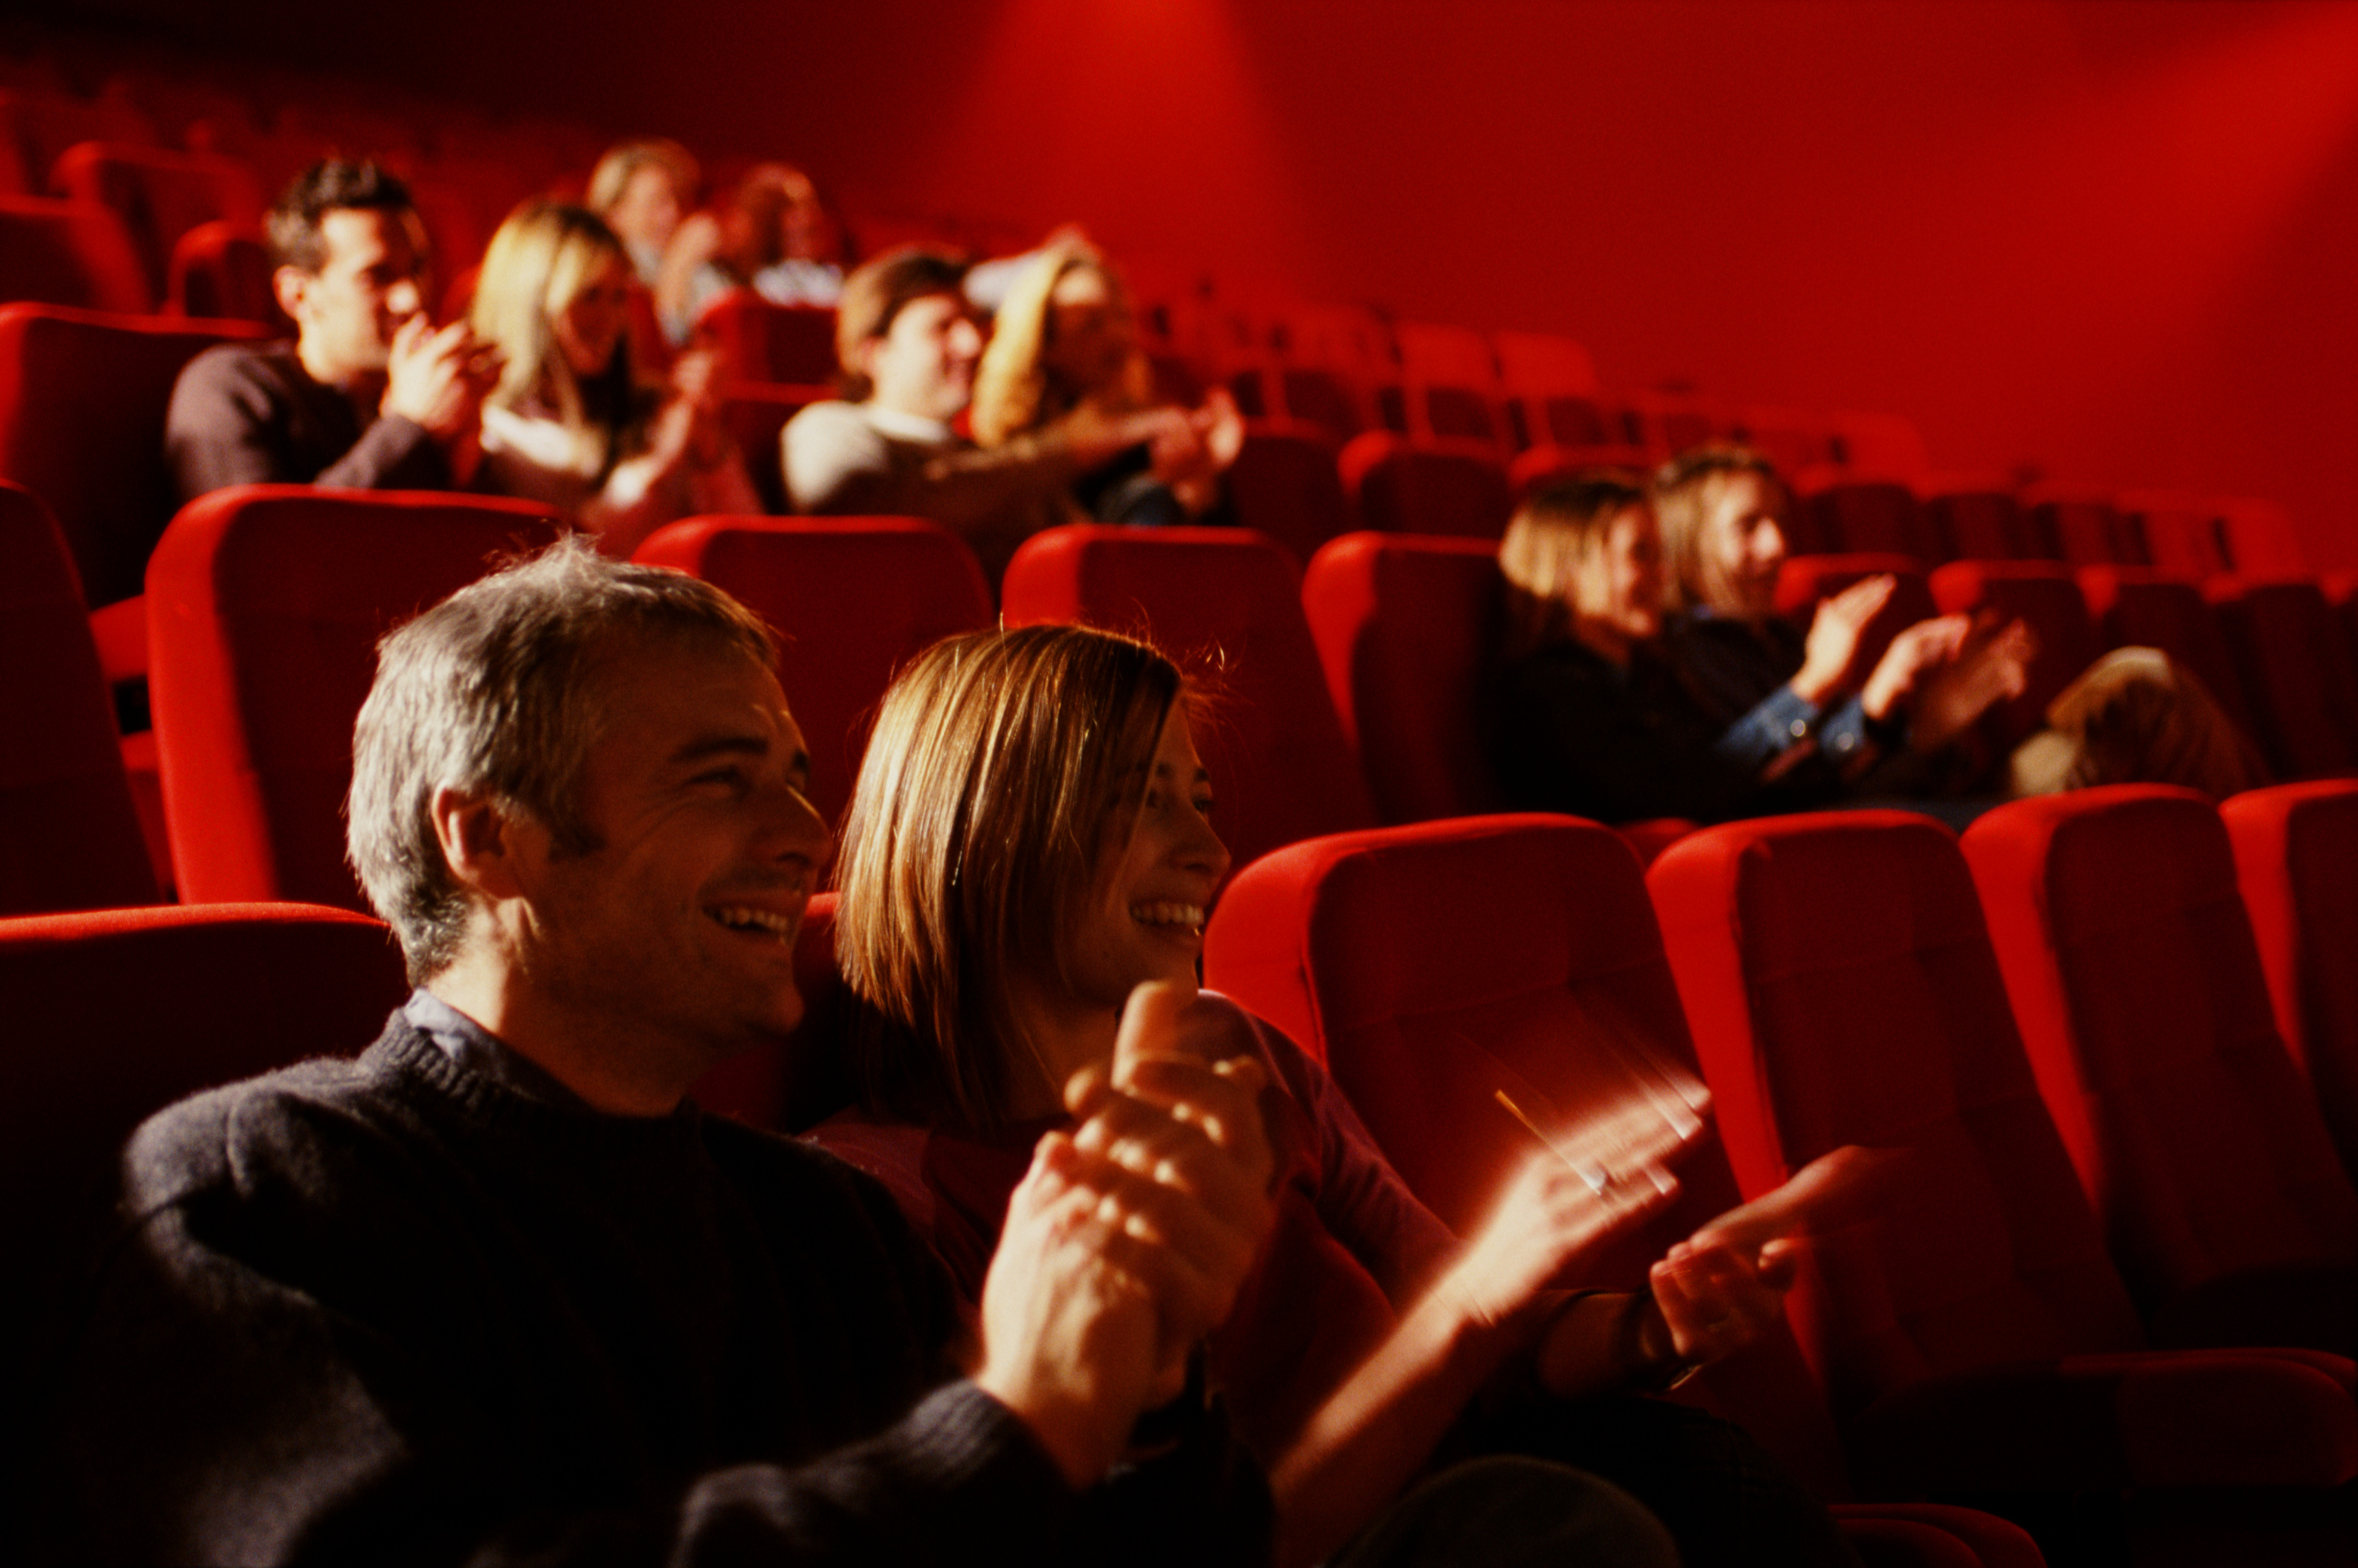 Правила зрителя в театре. Поход в театр. Люди сидят в кинотеатре. Зрители в зале. Зрительный зал с людьми.